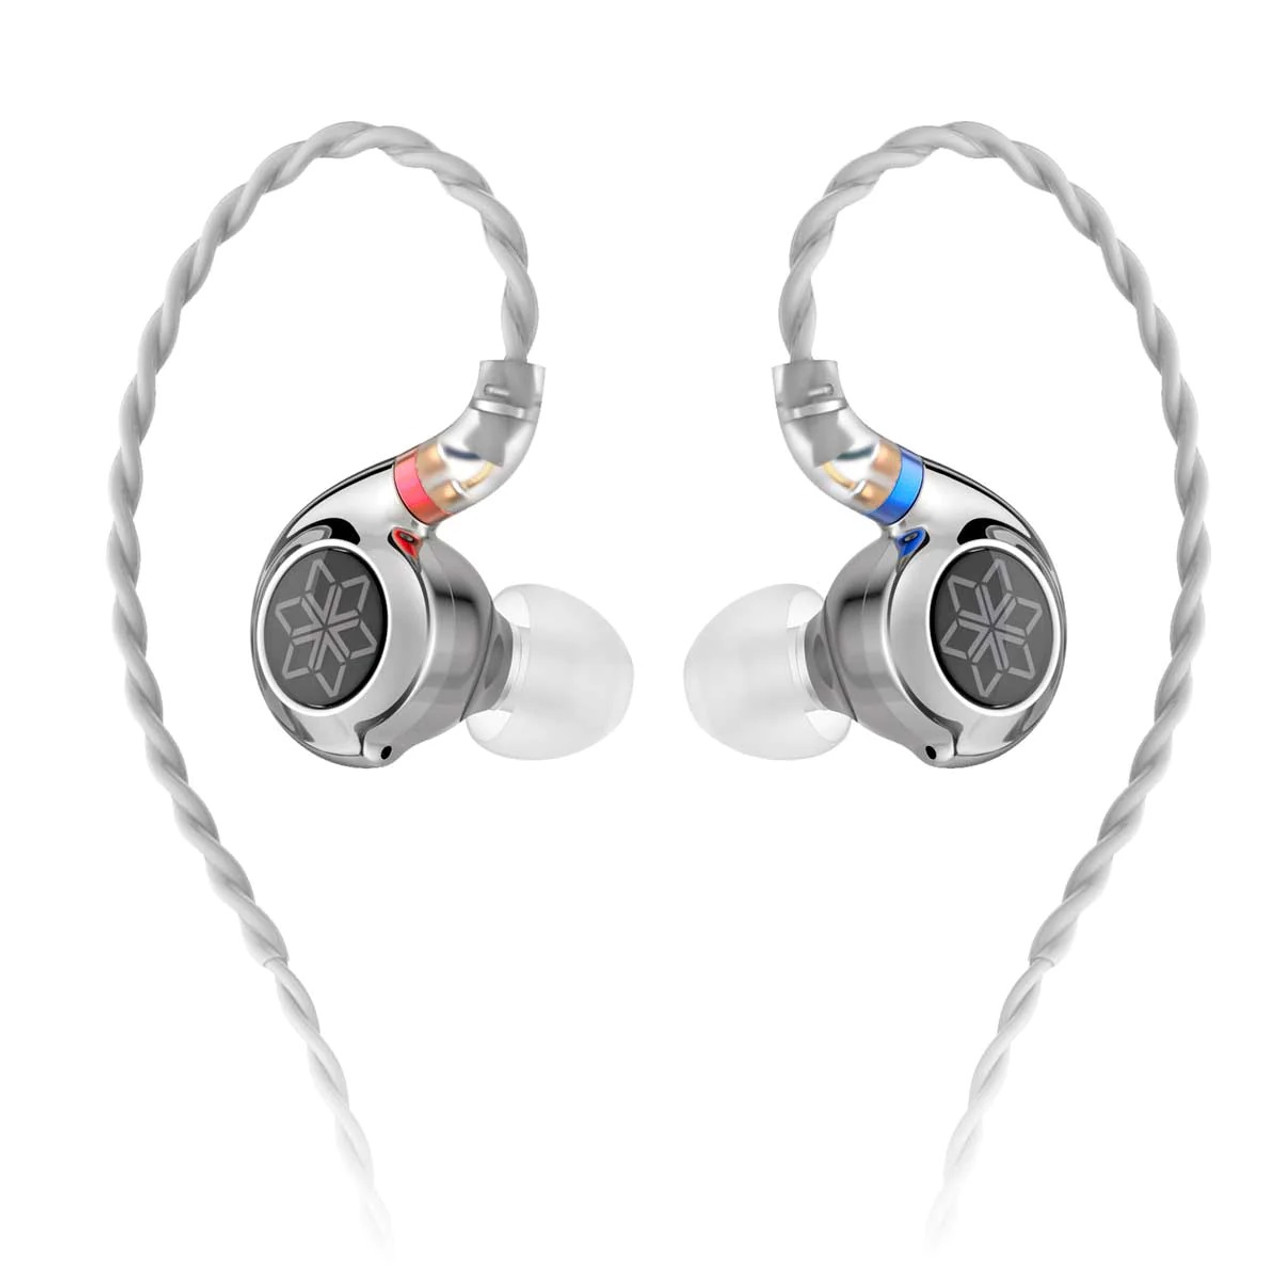 Hires-auriculares con cable HiFi, audífonos internos con micrófono